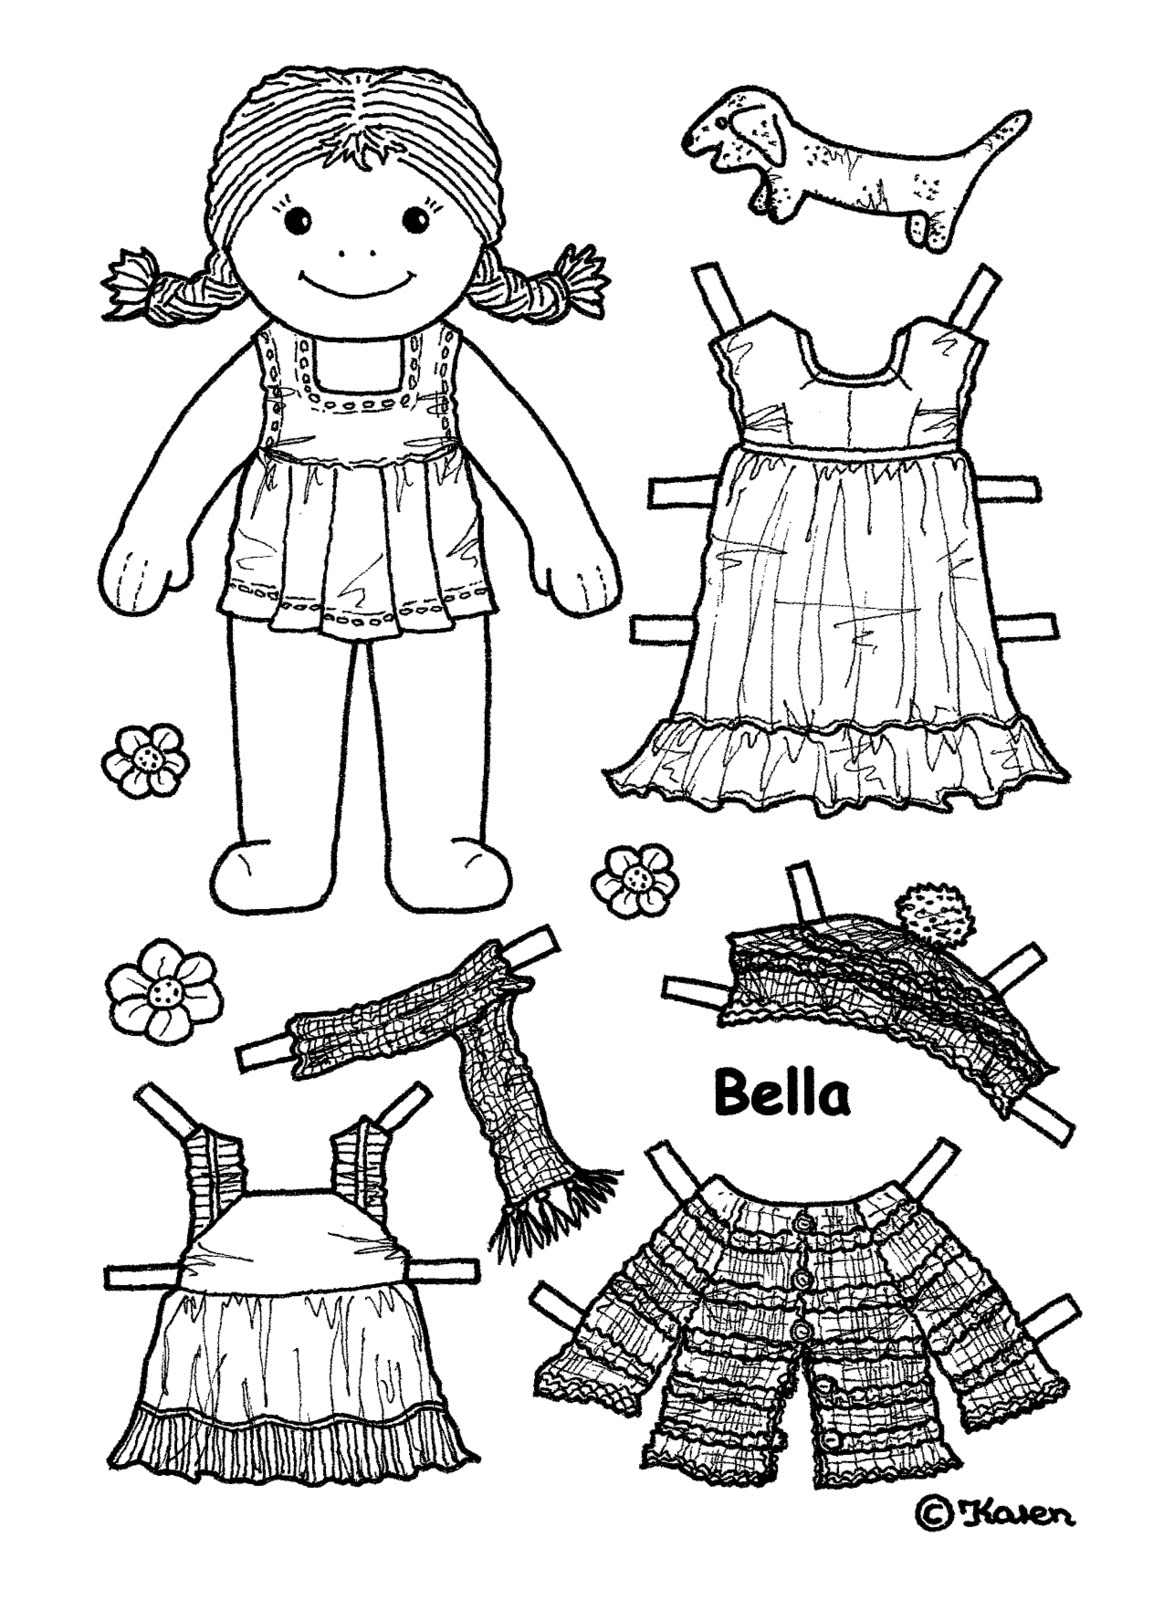 Karen`s Paper Dolls: Bella 1-5 Paper Doll to Print and 1-5 påklædningsdukke til at printe og farvelægge.